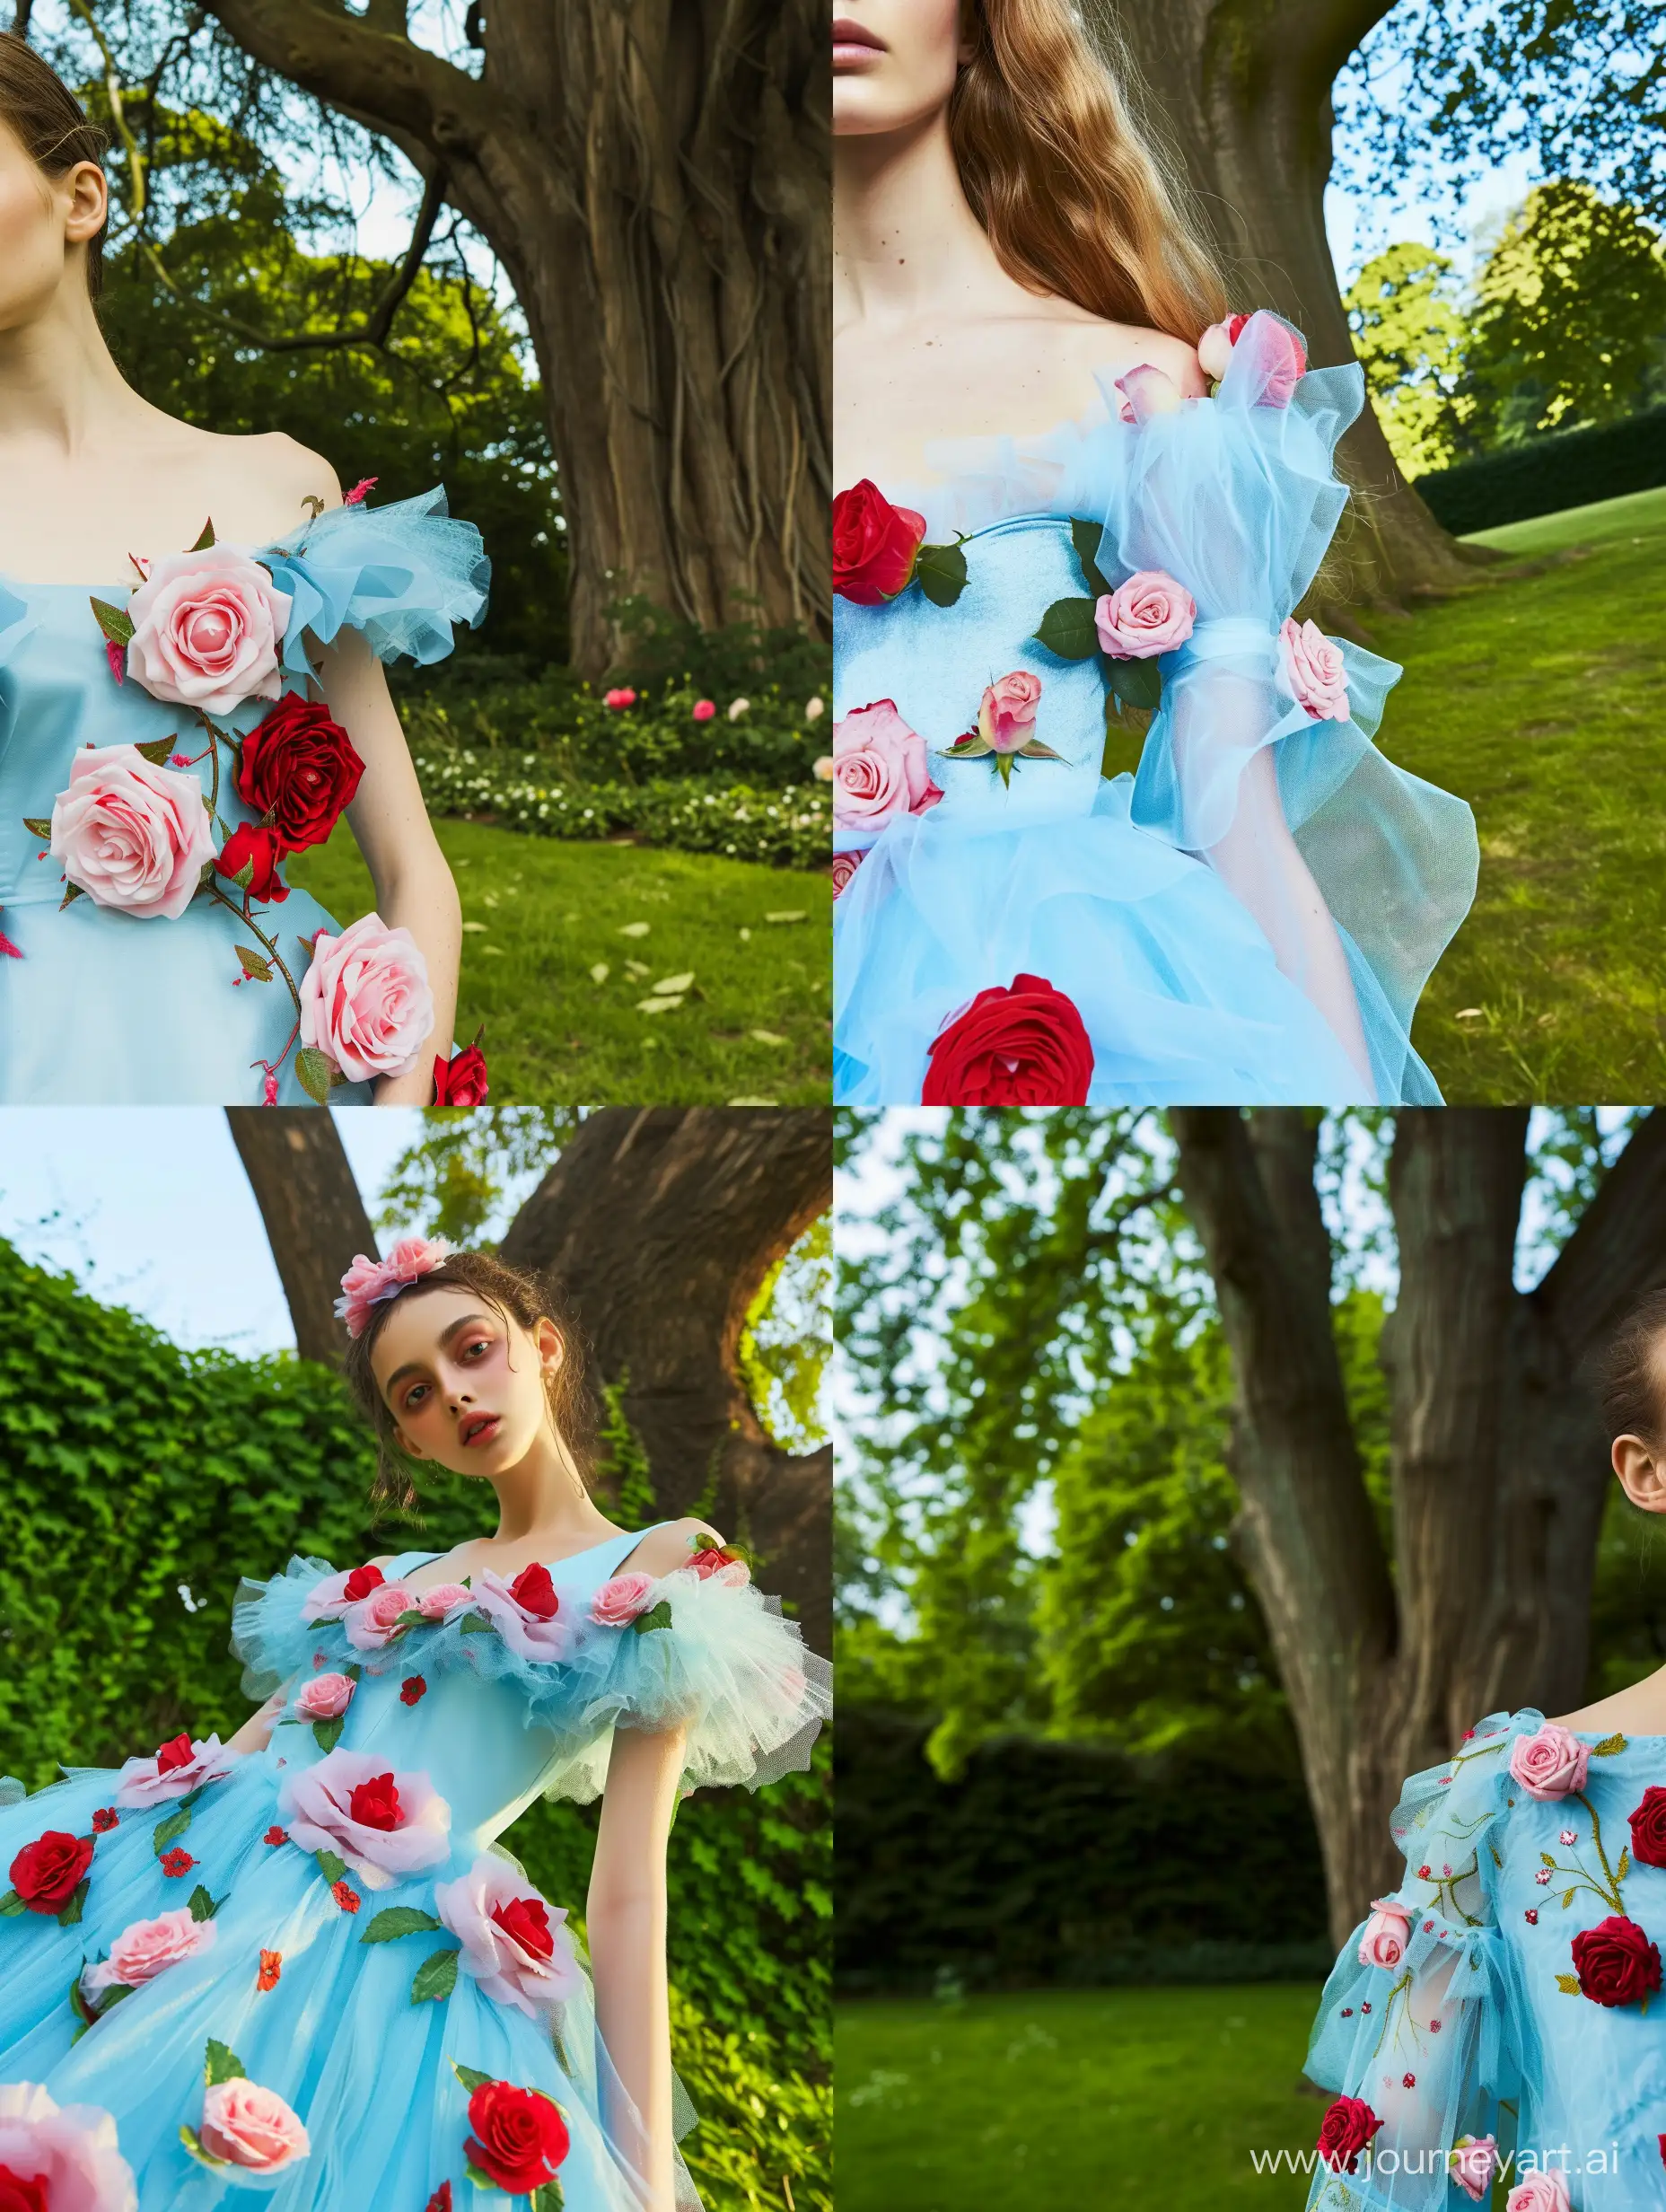 Enchanting-Model-in-Sky-Blue-Dress-Amidst-RoseAdorned-Garden